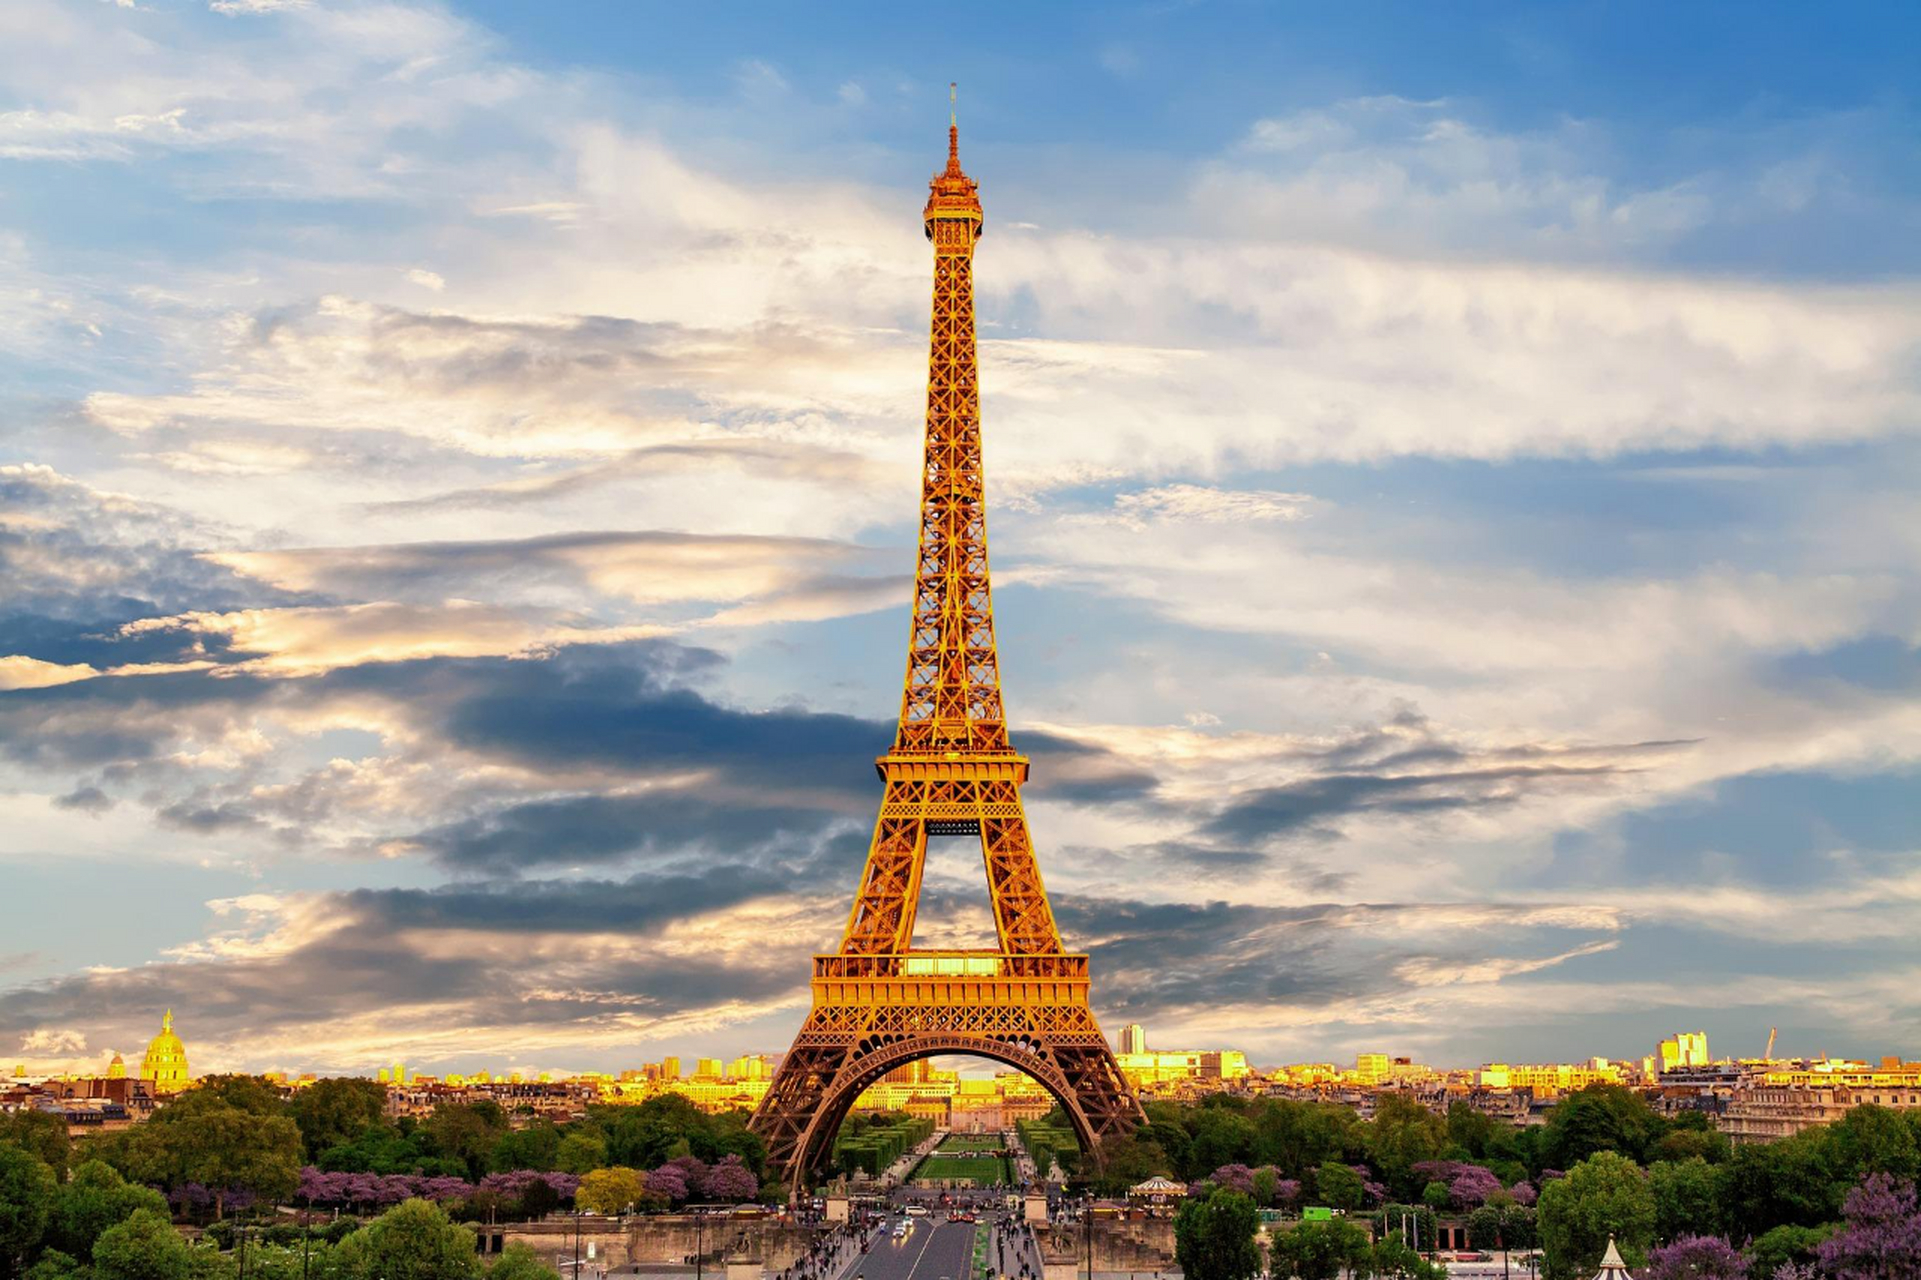 埃菲尔铁塔(eiffel tower)是法国巴黎的标志性建筑,也是世界上最著名